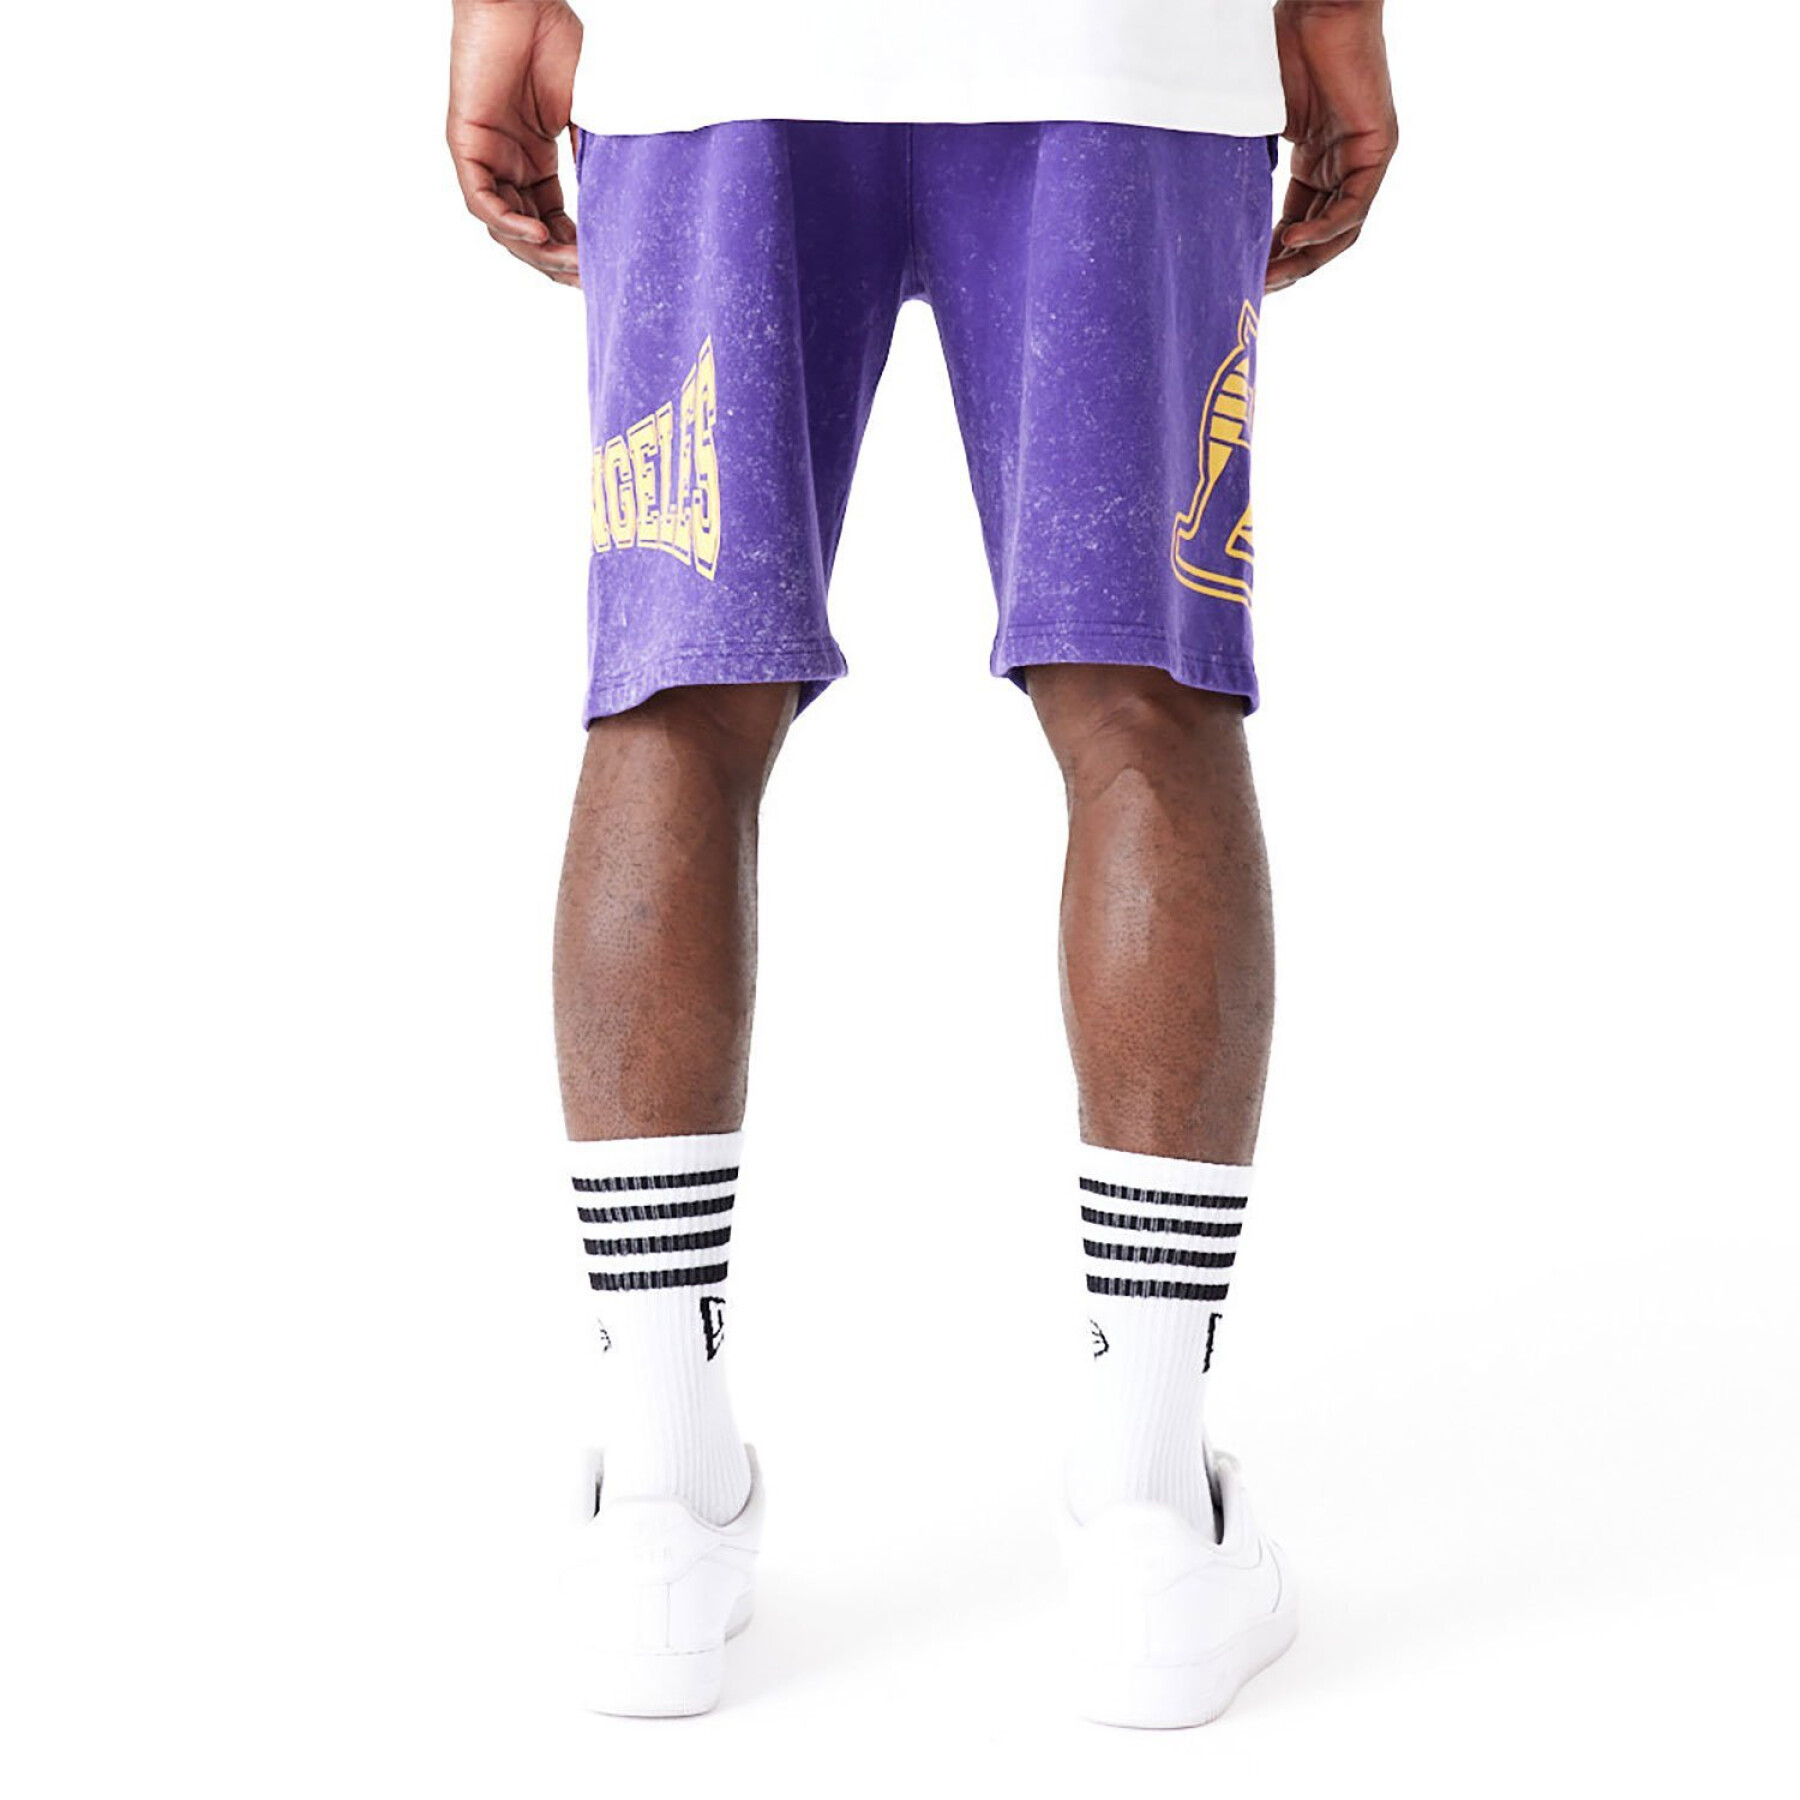 Shorts Los Angeles Lakers NBA Washed